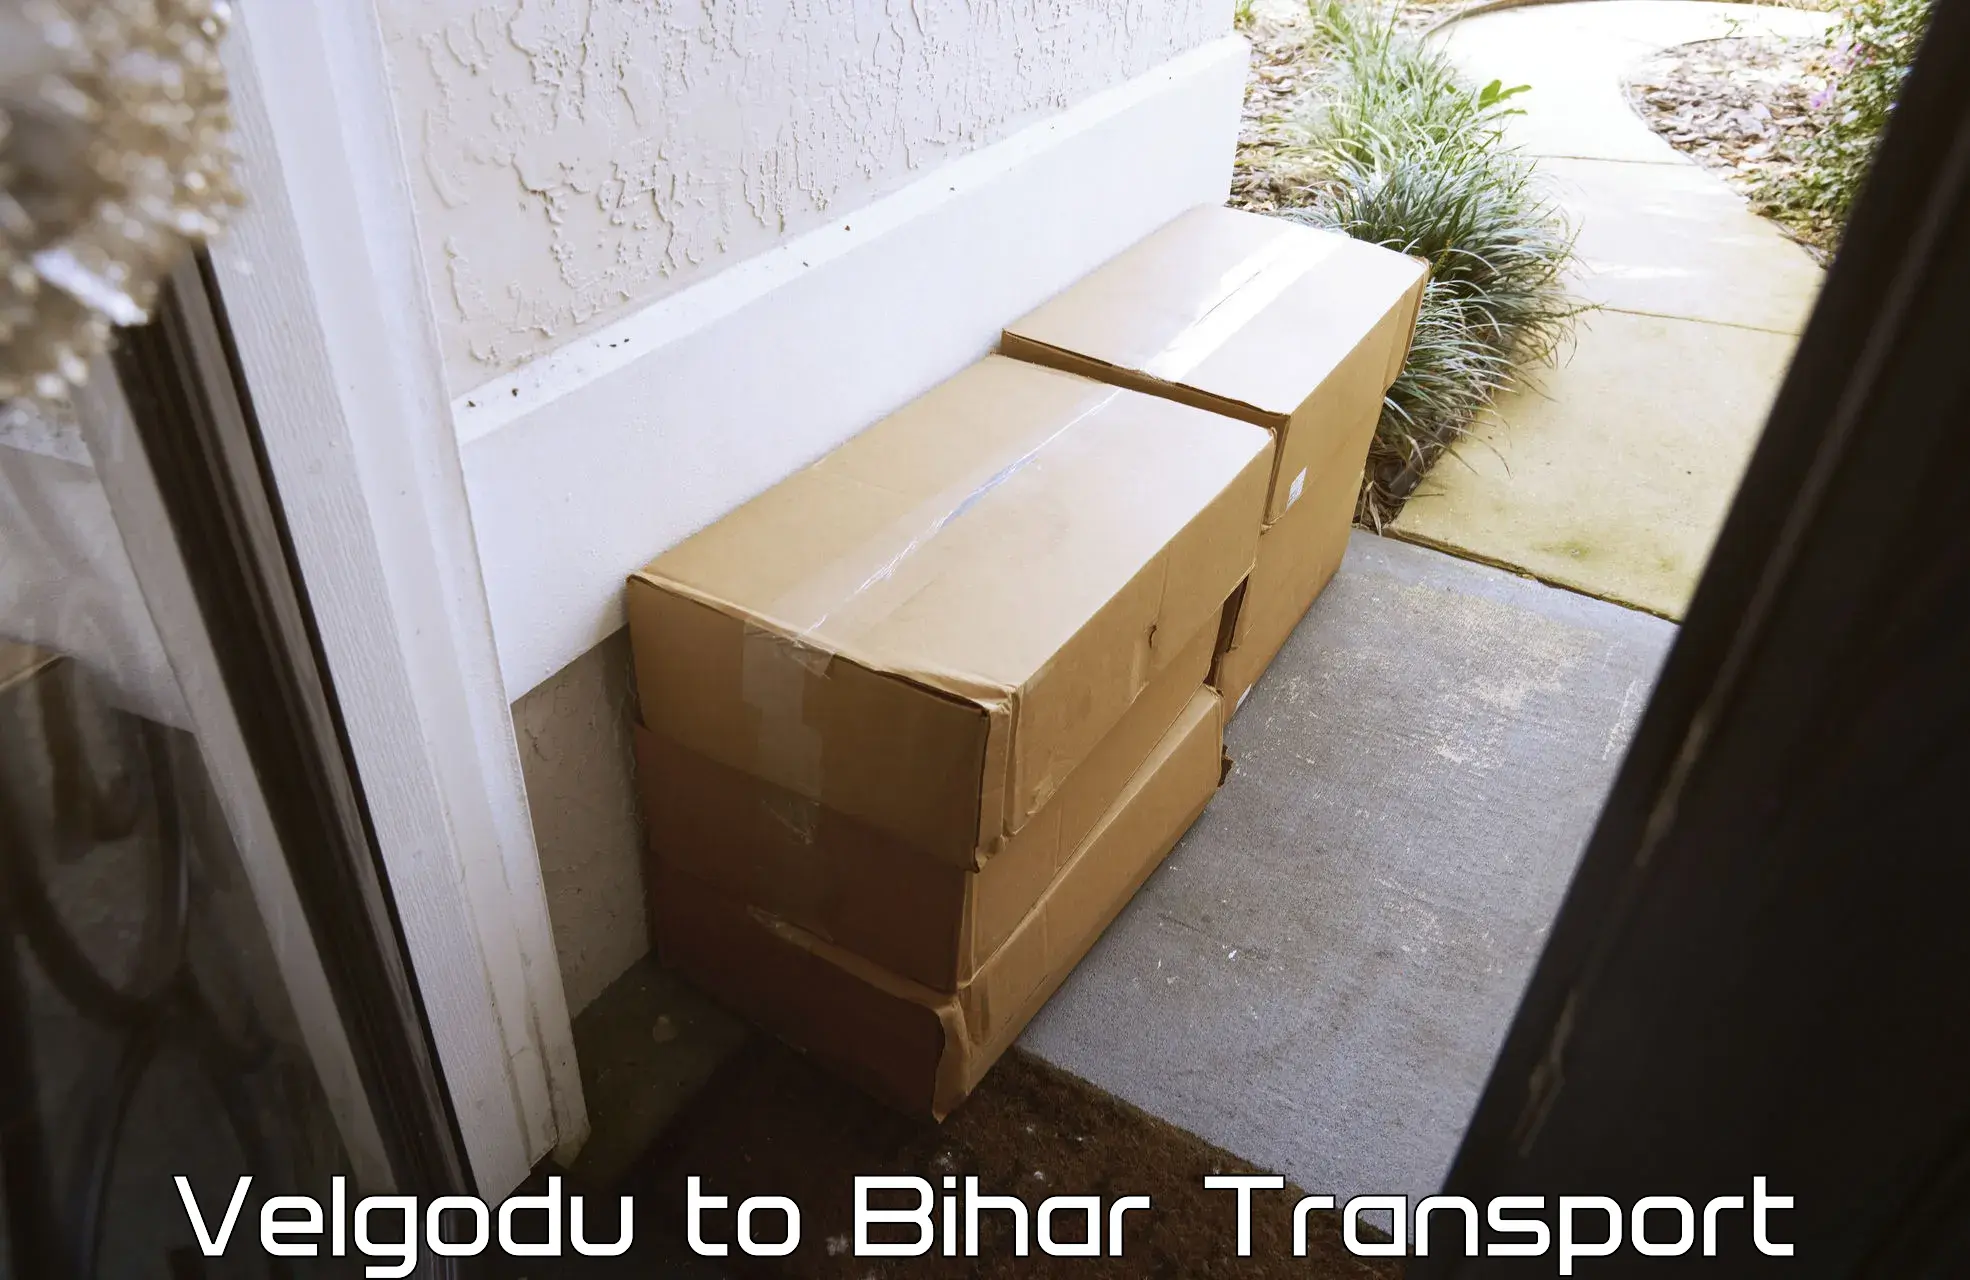 Shipping services Velgodu to Bhorey